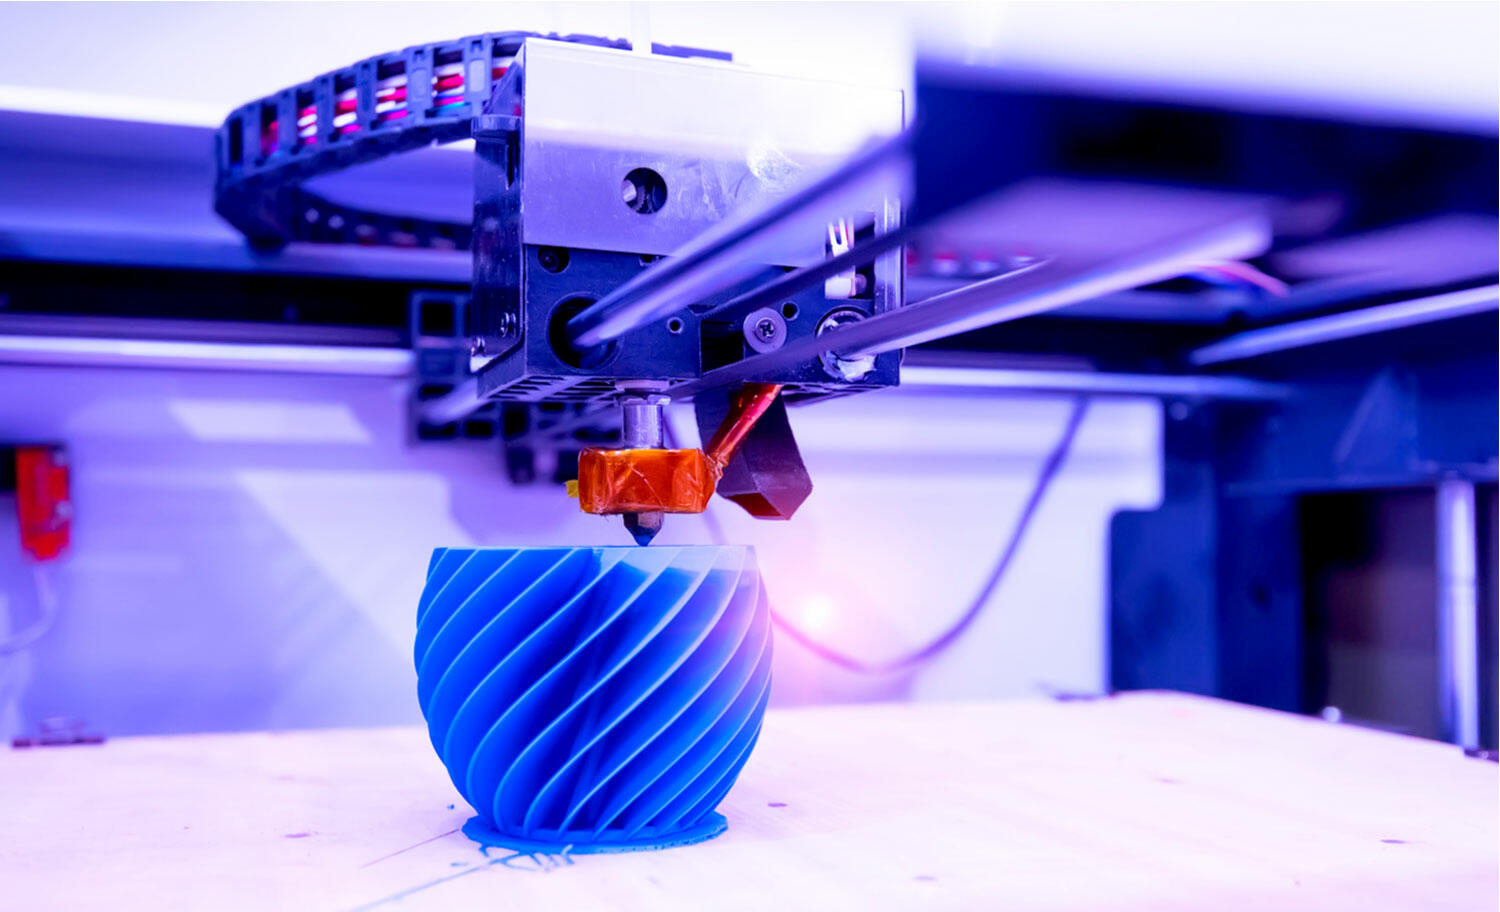 Maggiori informazioni su "Come funziona una stampante 3D"